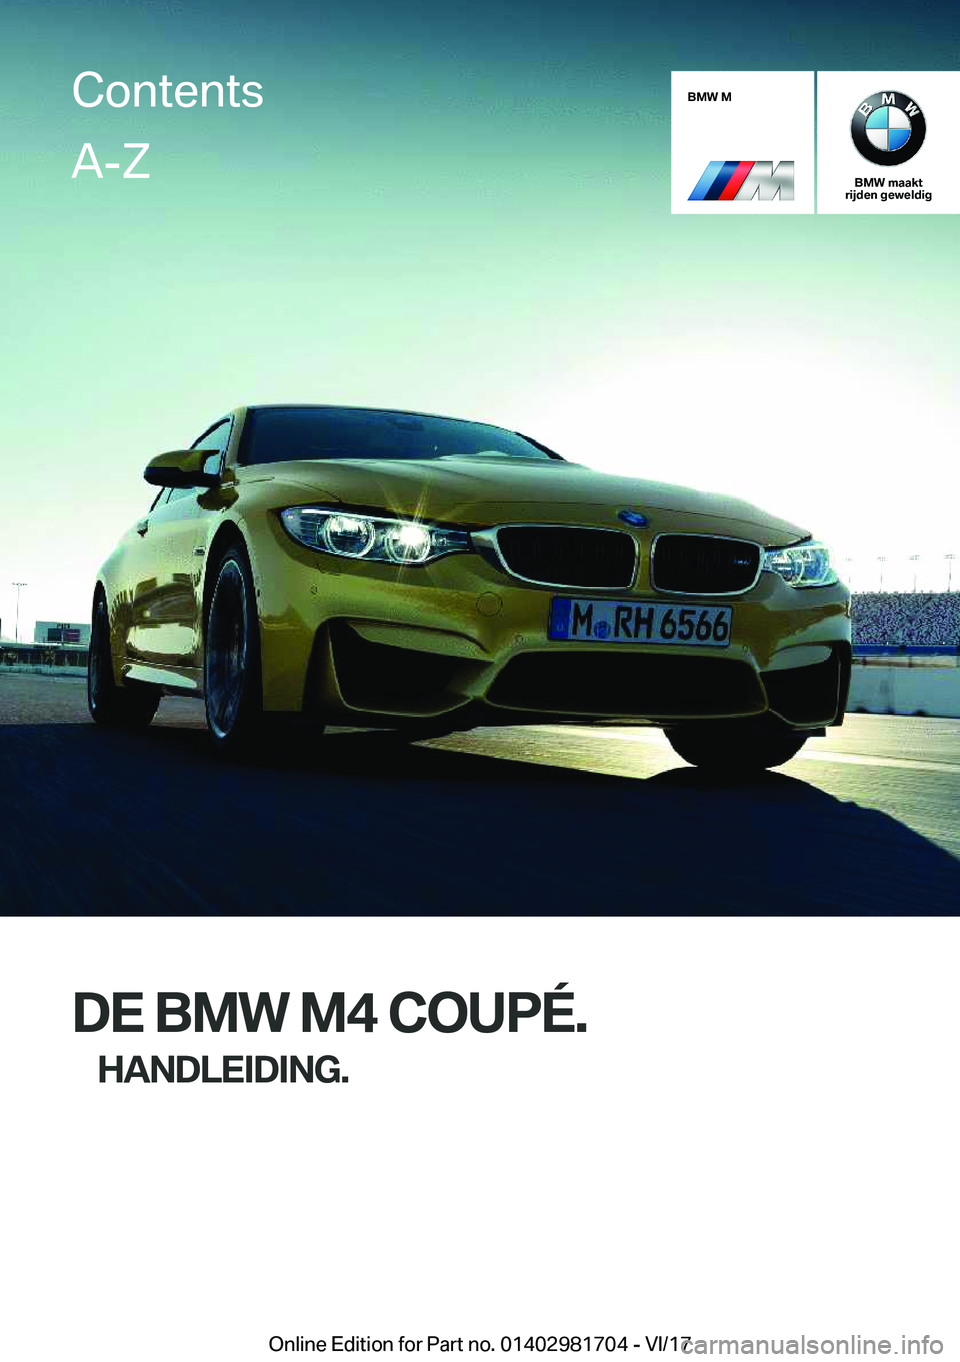 BMW M4 2018  Instructieboekjes (in Dutch) �B�M�W��M
�B�M�W��m�a�a�k�t
�r�i�j�d�e�n��g�e�w�e�l�d�i�g
�D�E��B�M�W��M�4��C�O�U�P�